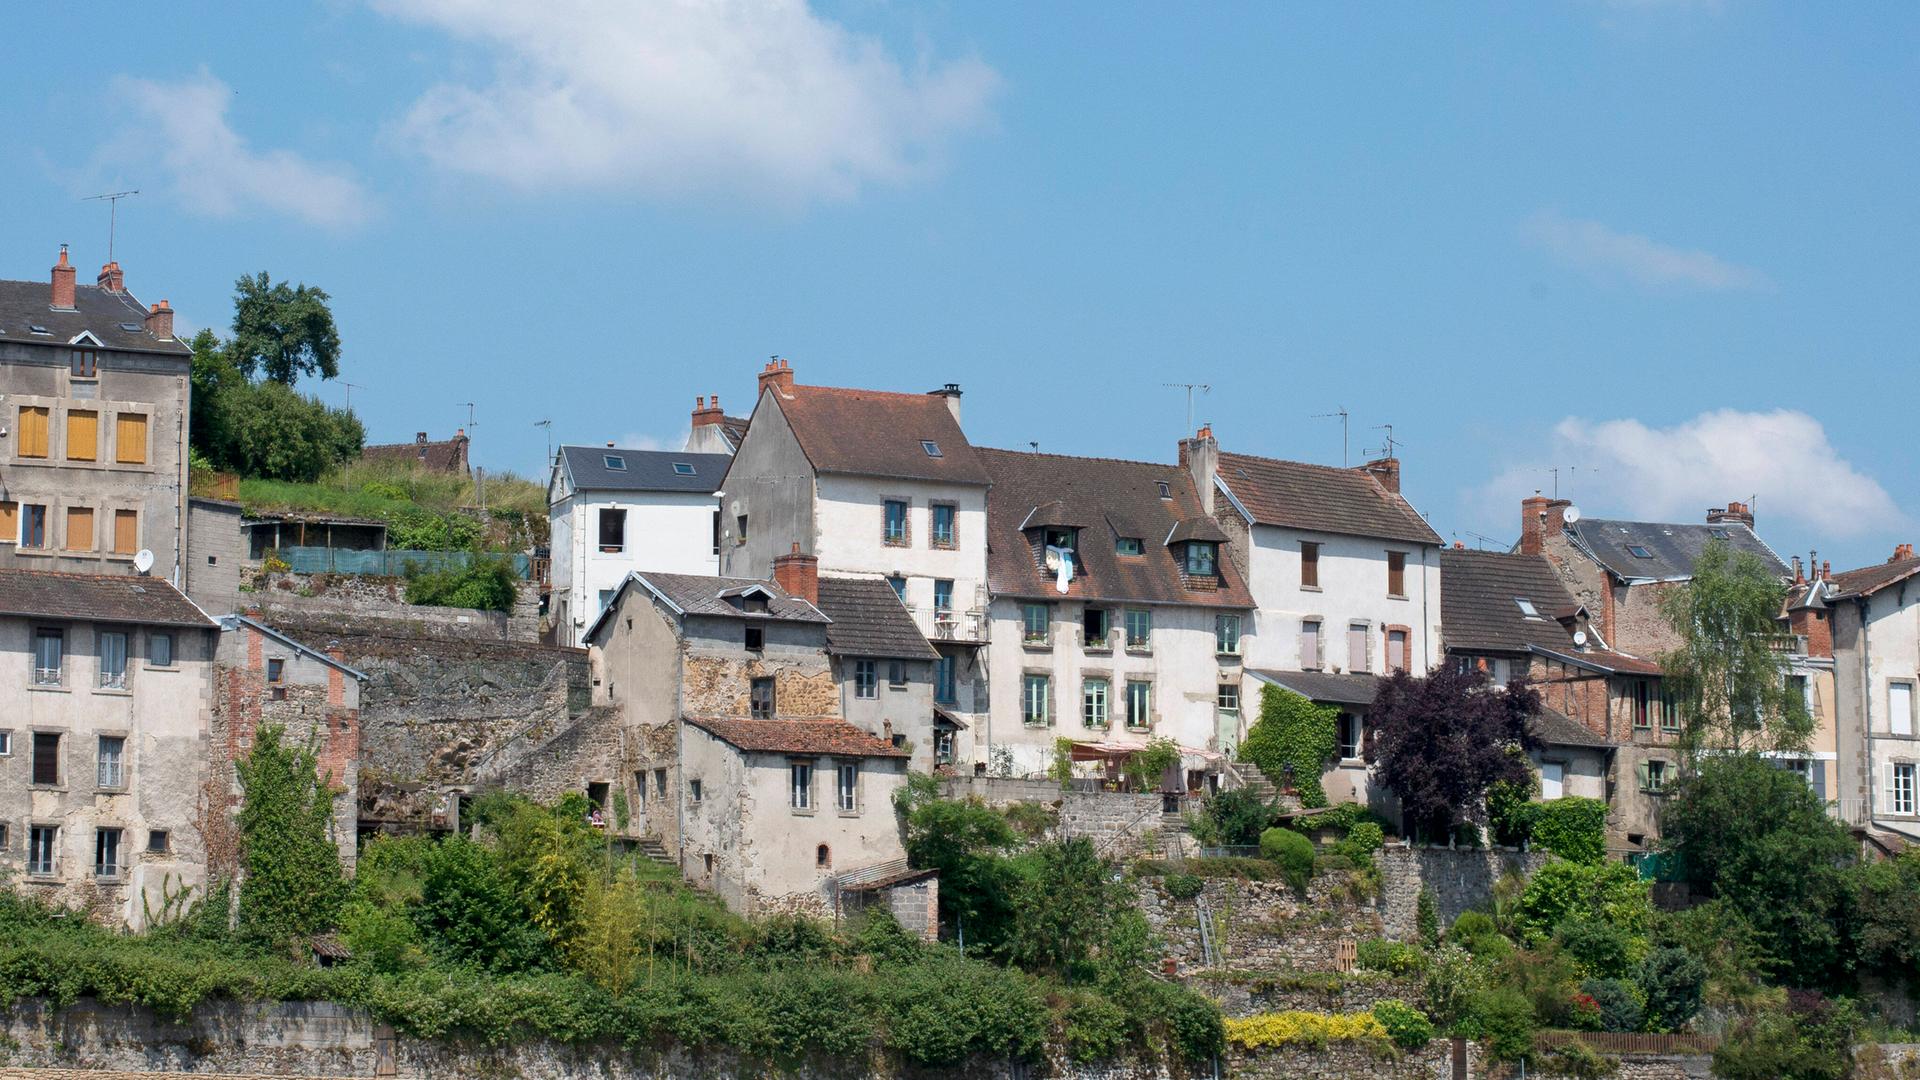 Verfallene Häuser an einem Hang in dem Ort La Creuse in Frankreich